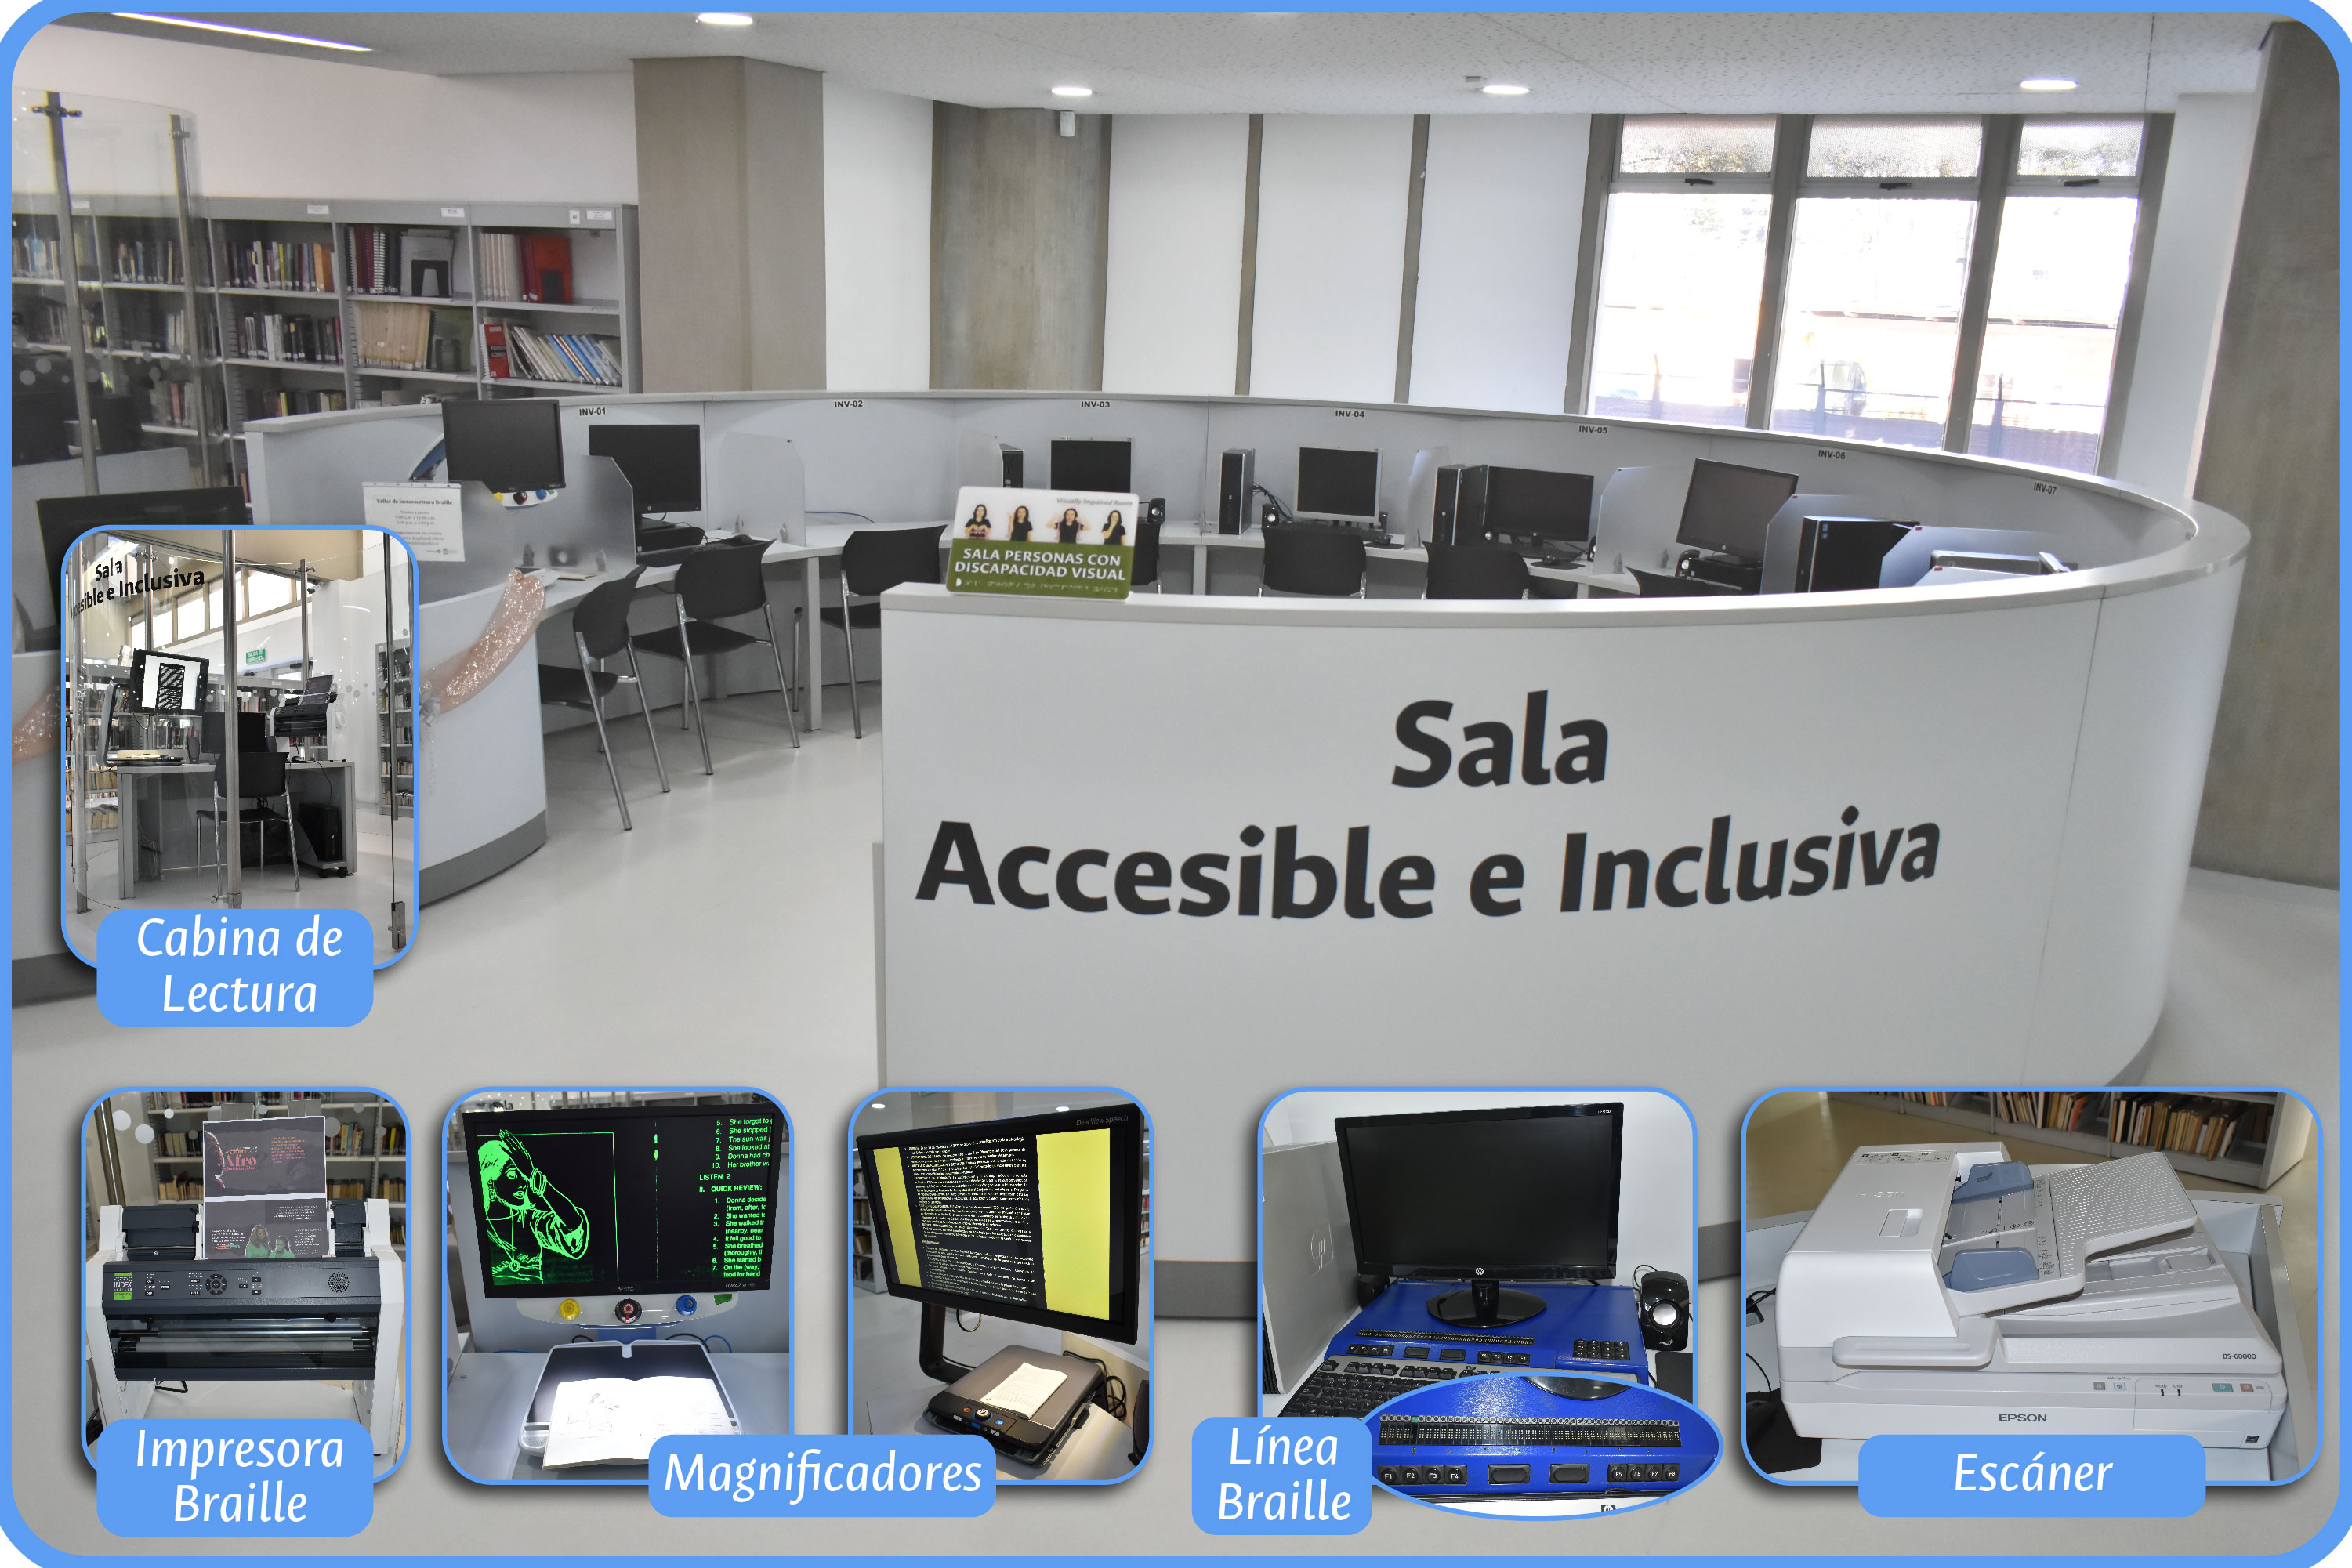 Sala Accesible e Inclusiva que se encuentra en el primer piso de la Biblioteca Gabriel García Márquez - imagen